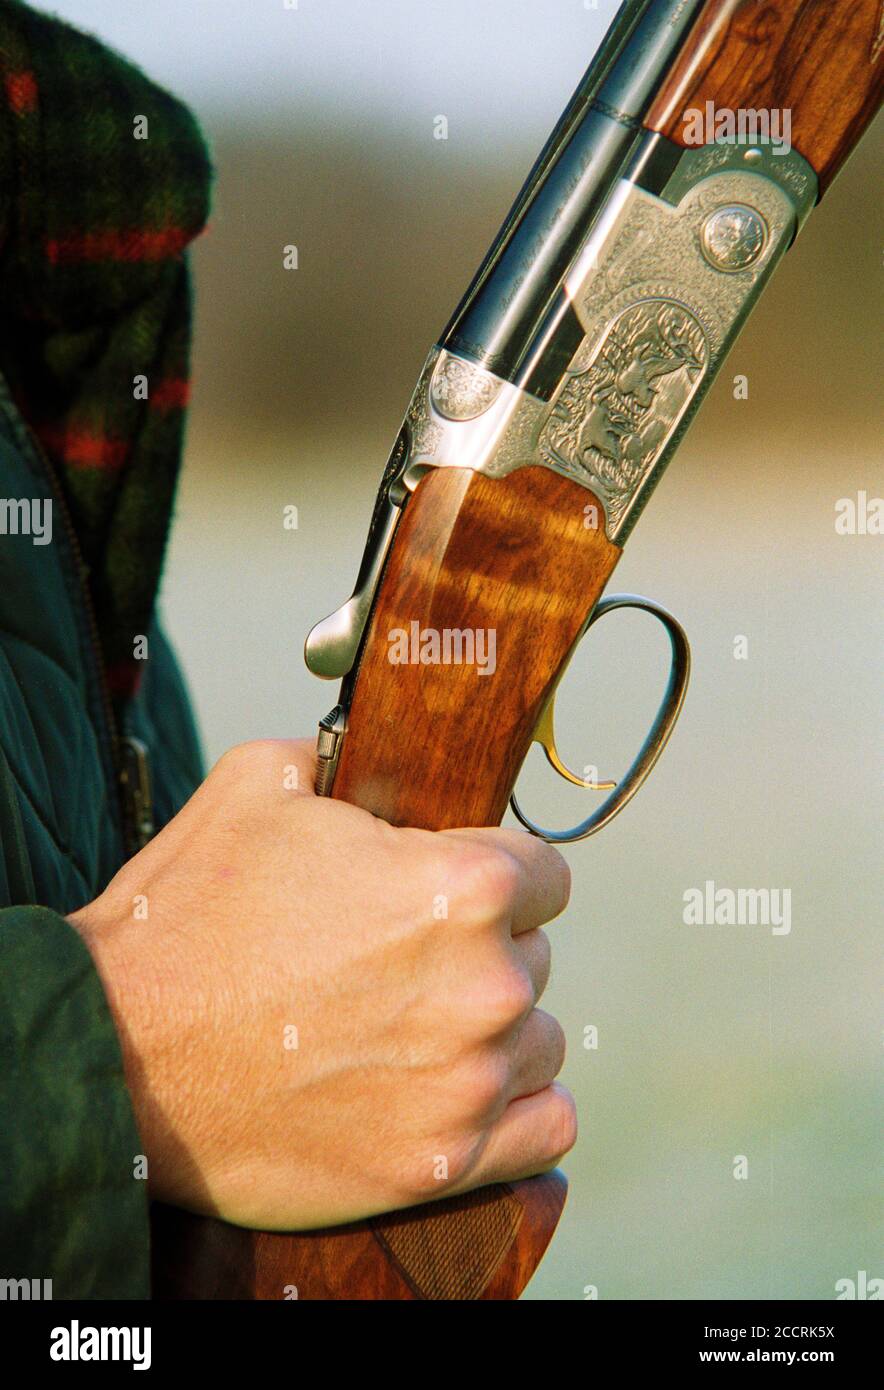 Gros plan d'une main tenant un fusil Beretta côte à côte. Circa 2001 Royaume-Uni. Banque D'Images